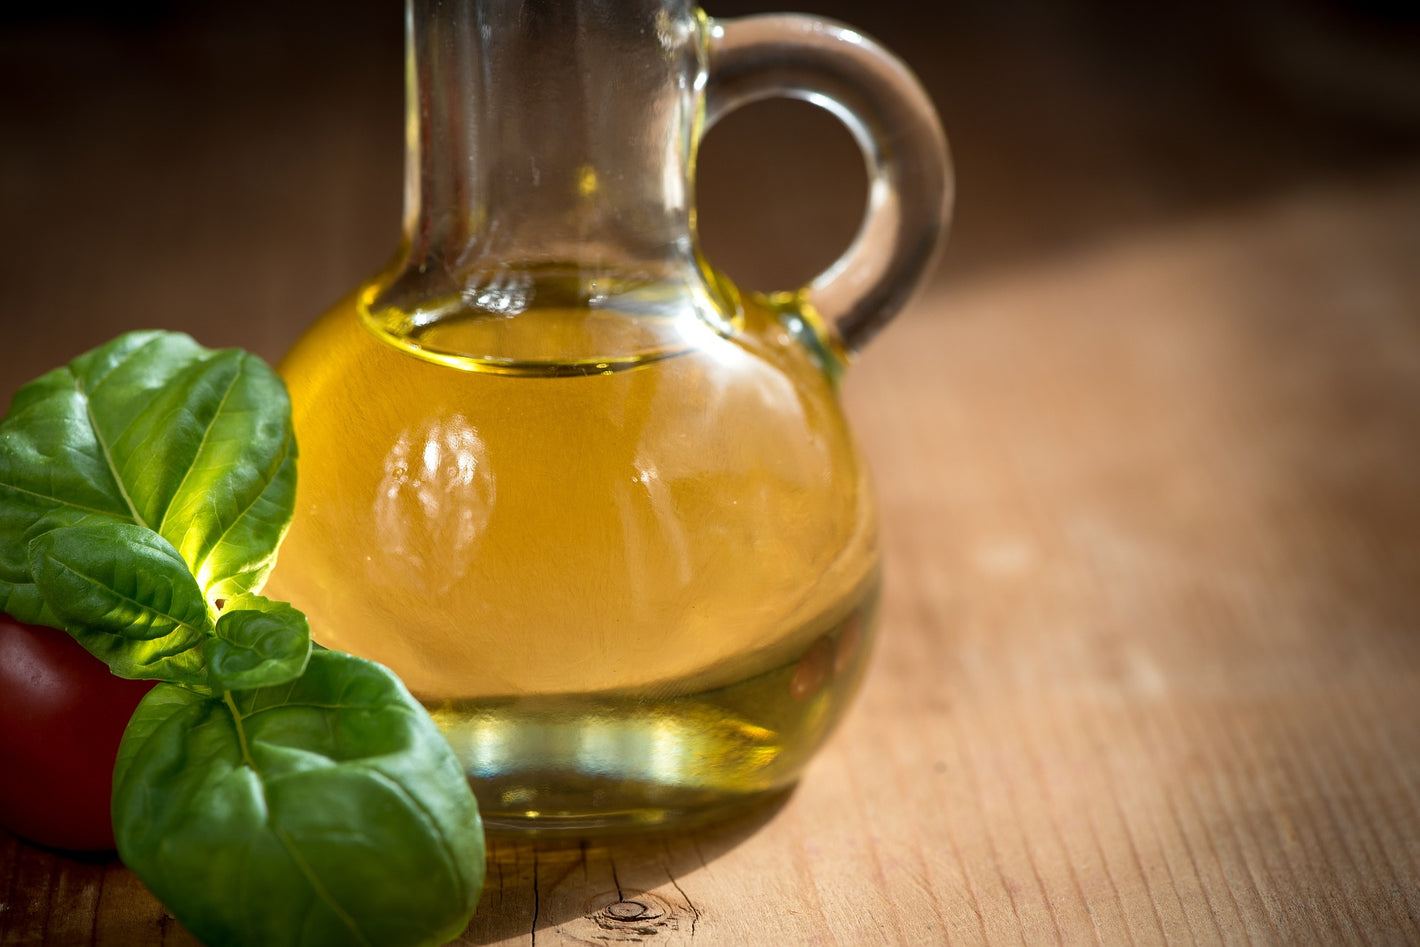 Fused & Infused Olive Oils